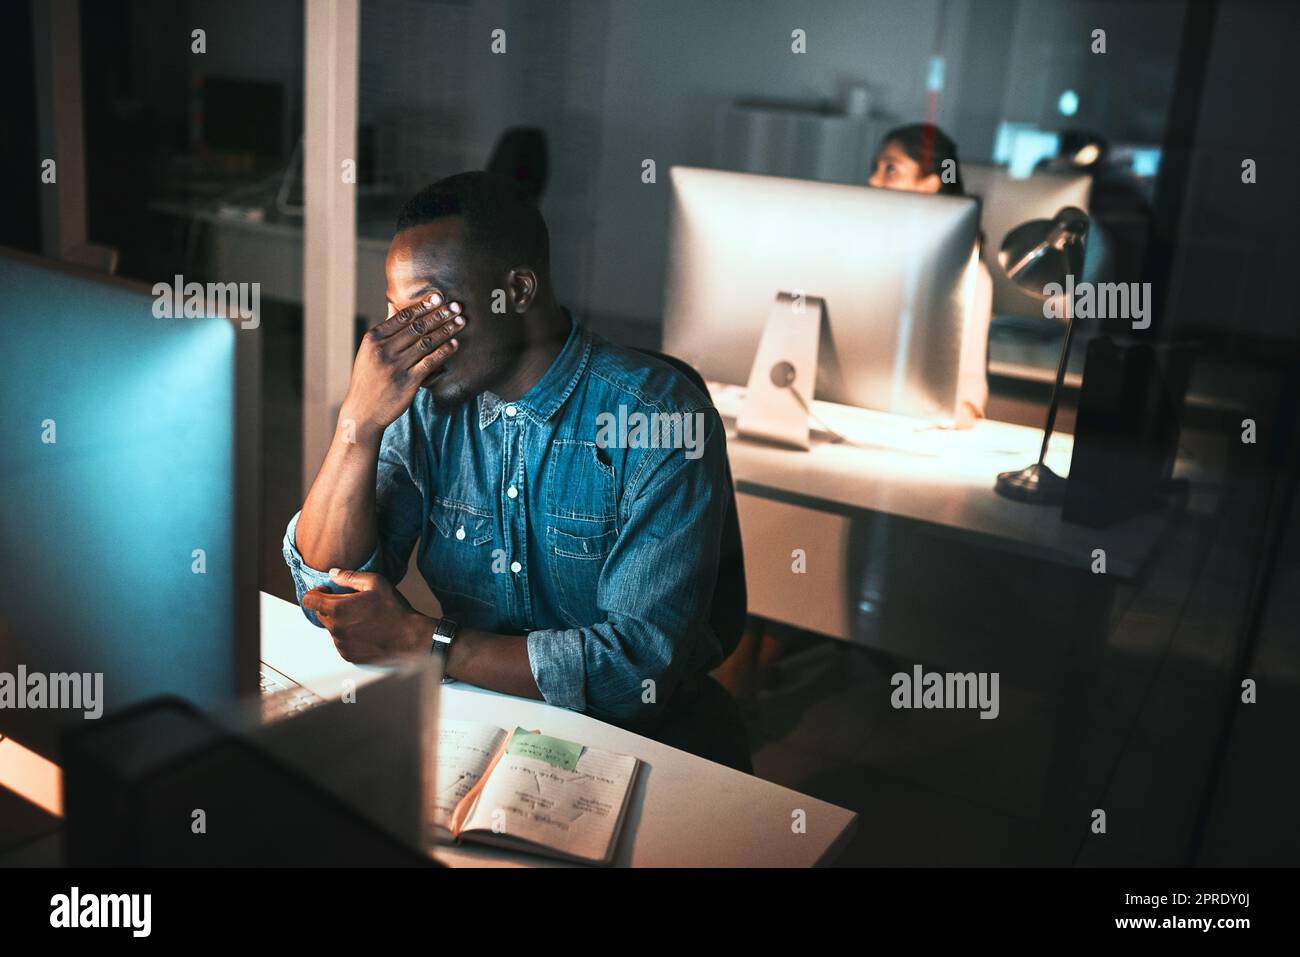 HES fühlt die Belastung. High-Angle-Aufnahme eines jungen männlichen Designers, der während der Arbeit am Computer im Büro gestresst aussieht. Stockfoto